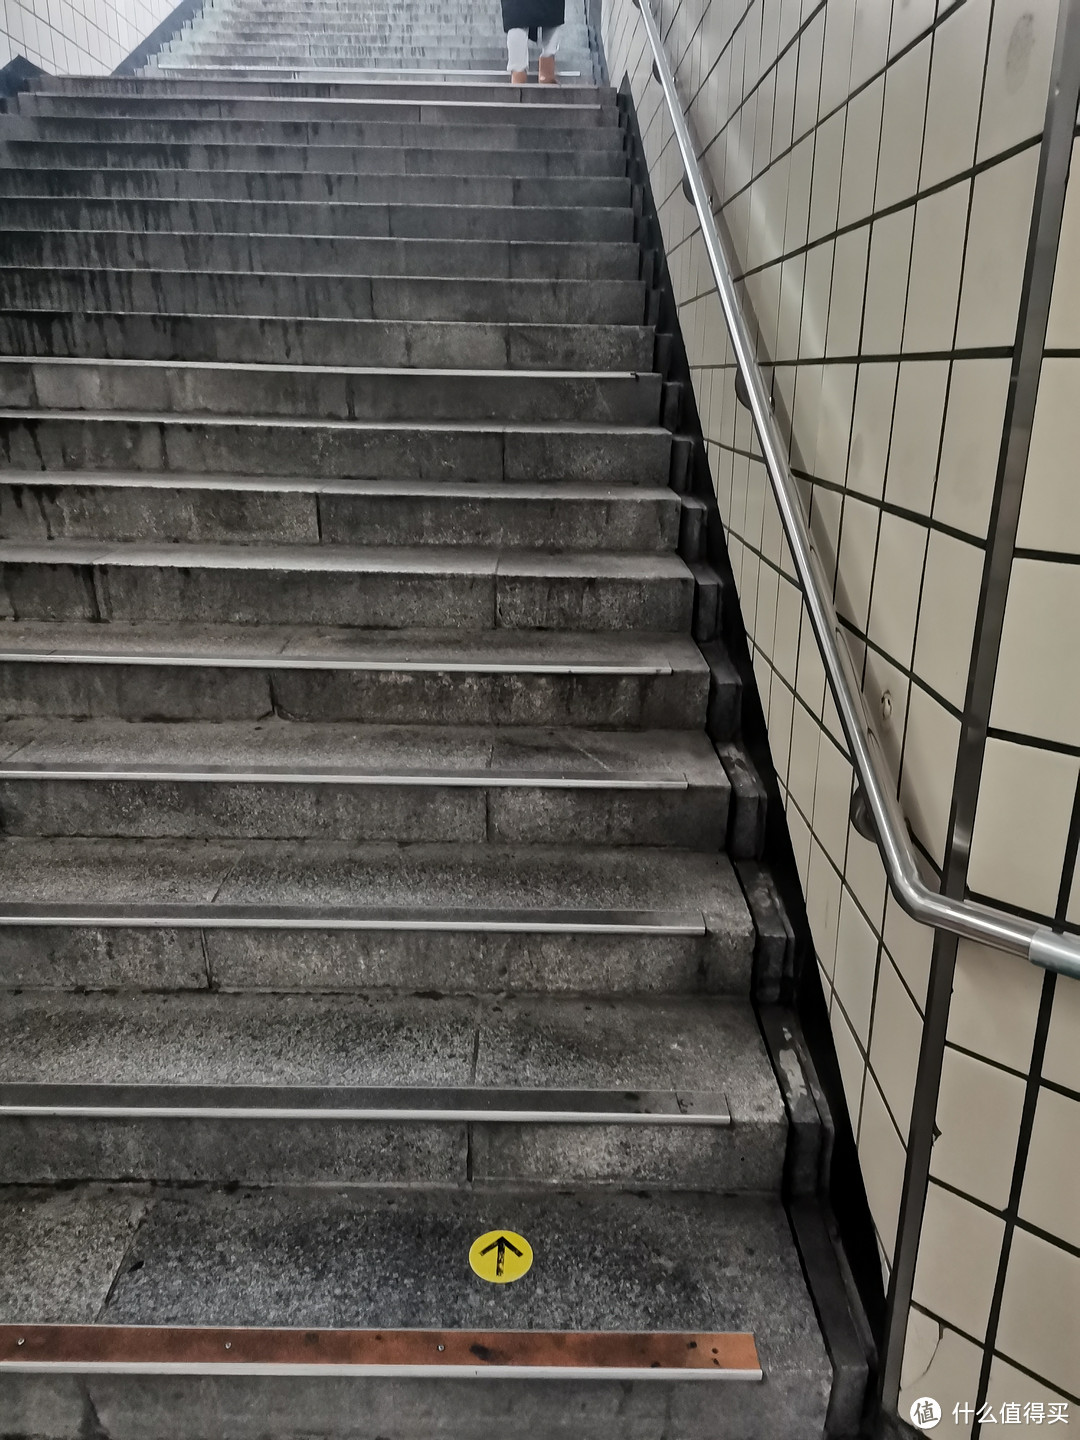 我恨首尔地铁站的楼梯们 并且永远是你提着大箱子气喘吁吁爬上去 才会发现出口处不远就有直达电梯（但是在地铁内的时候怎么转悠都找不到